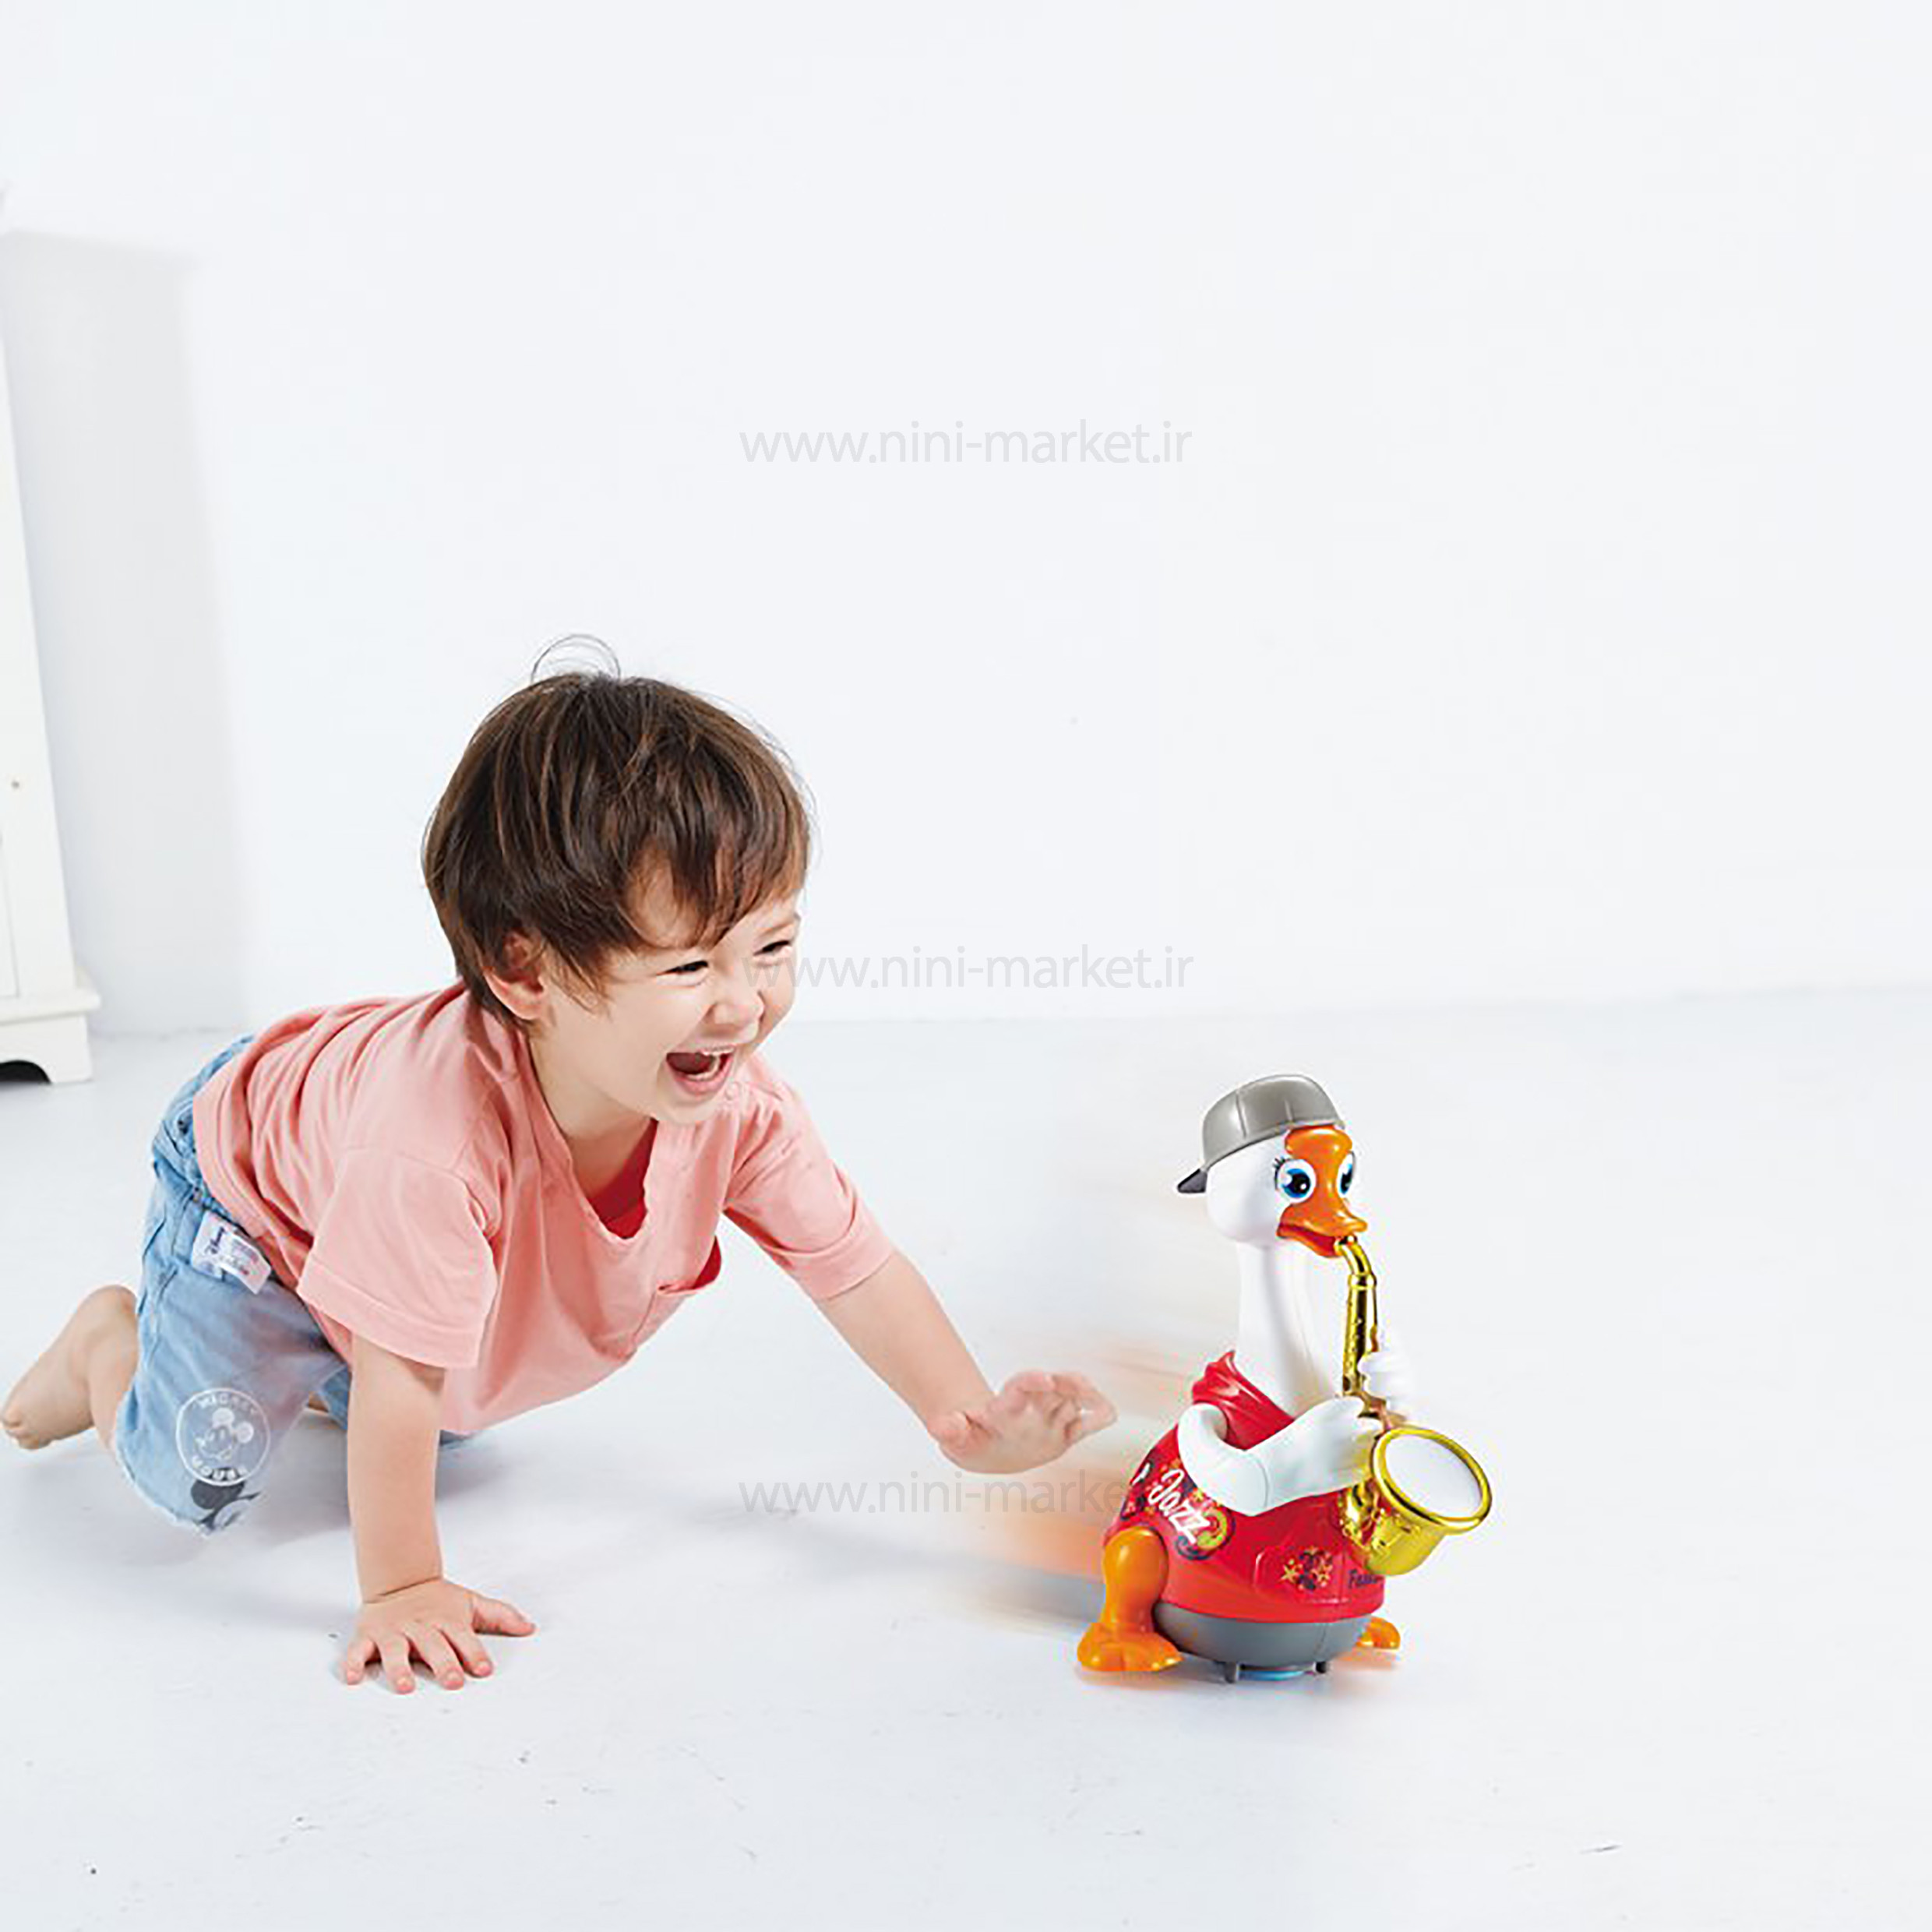 ویژگی اردک رقاص ساکسیفون رنگ قرمز هولی تویز Hulie toys